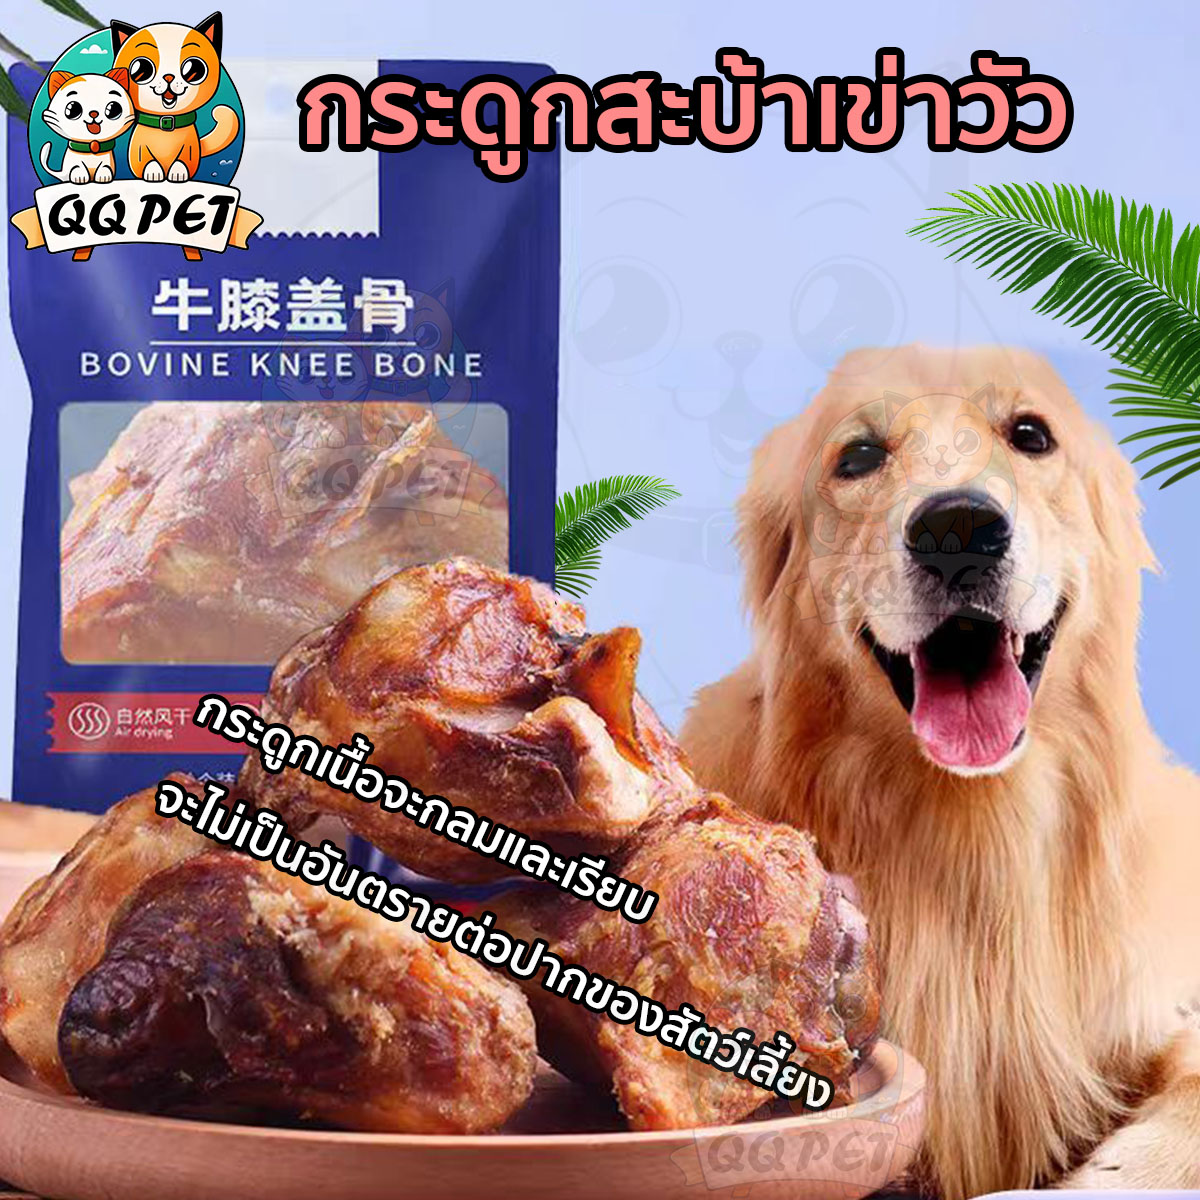 ขนมสำหรับสุนัข QQPET ขนมสุนัข ขนมสุนัขขนาดใหญ่ กระดูกสะบ้าวัว วัตถุดิบเป็นธรรมชาติล้วนๆ และไม่มีสารปรุงแต่งใดๆ